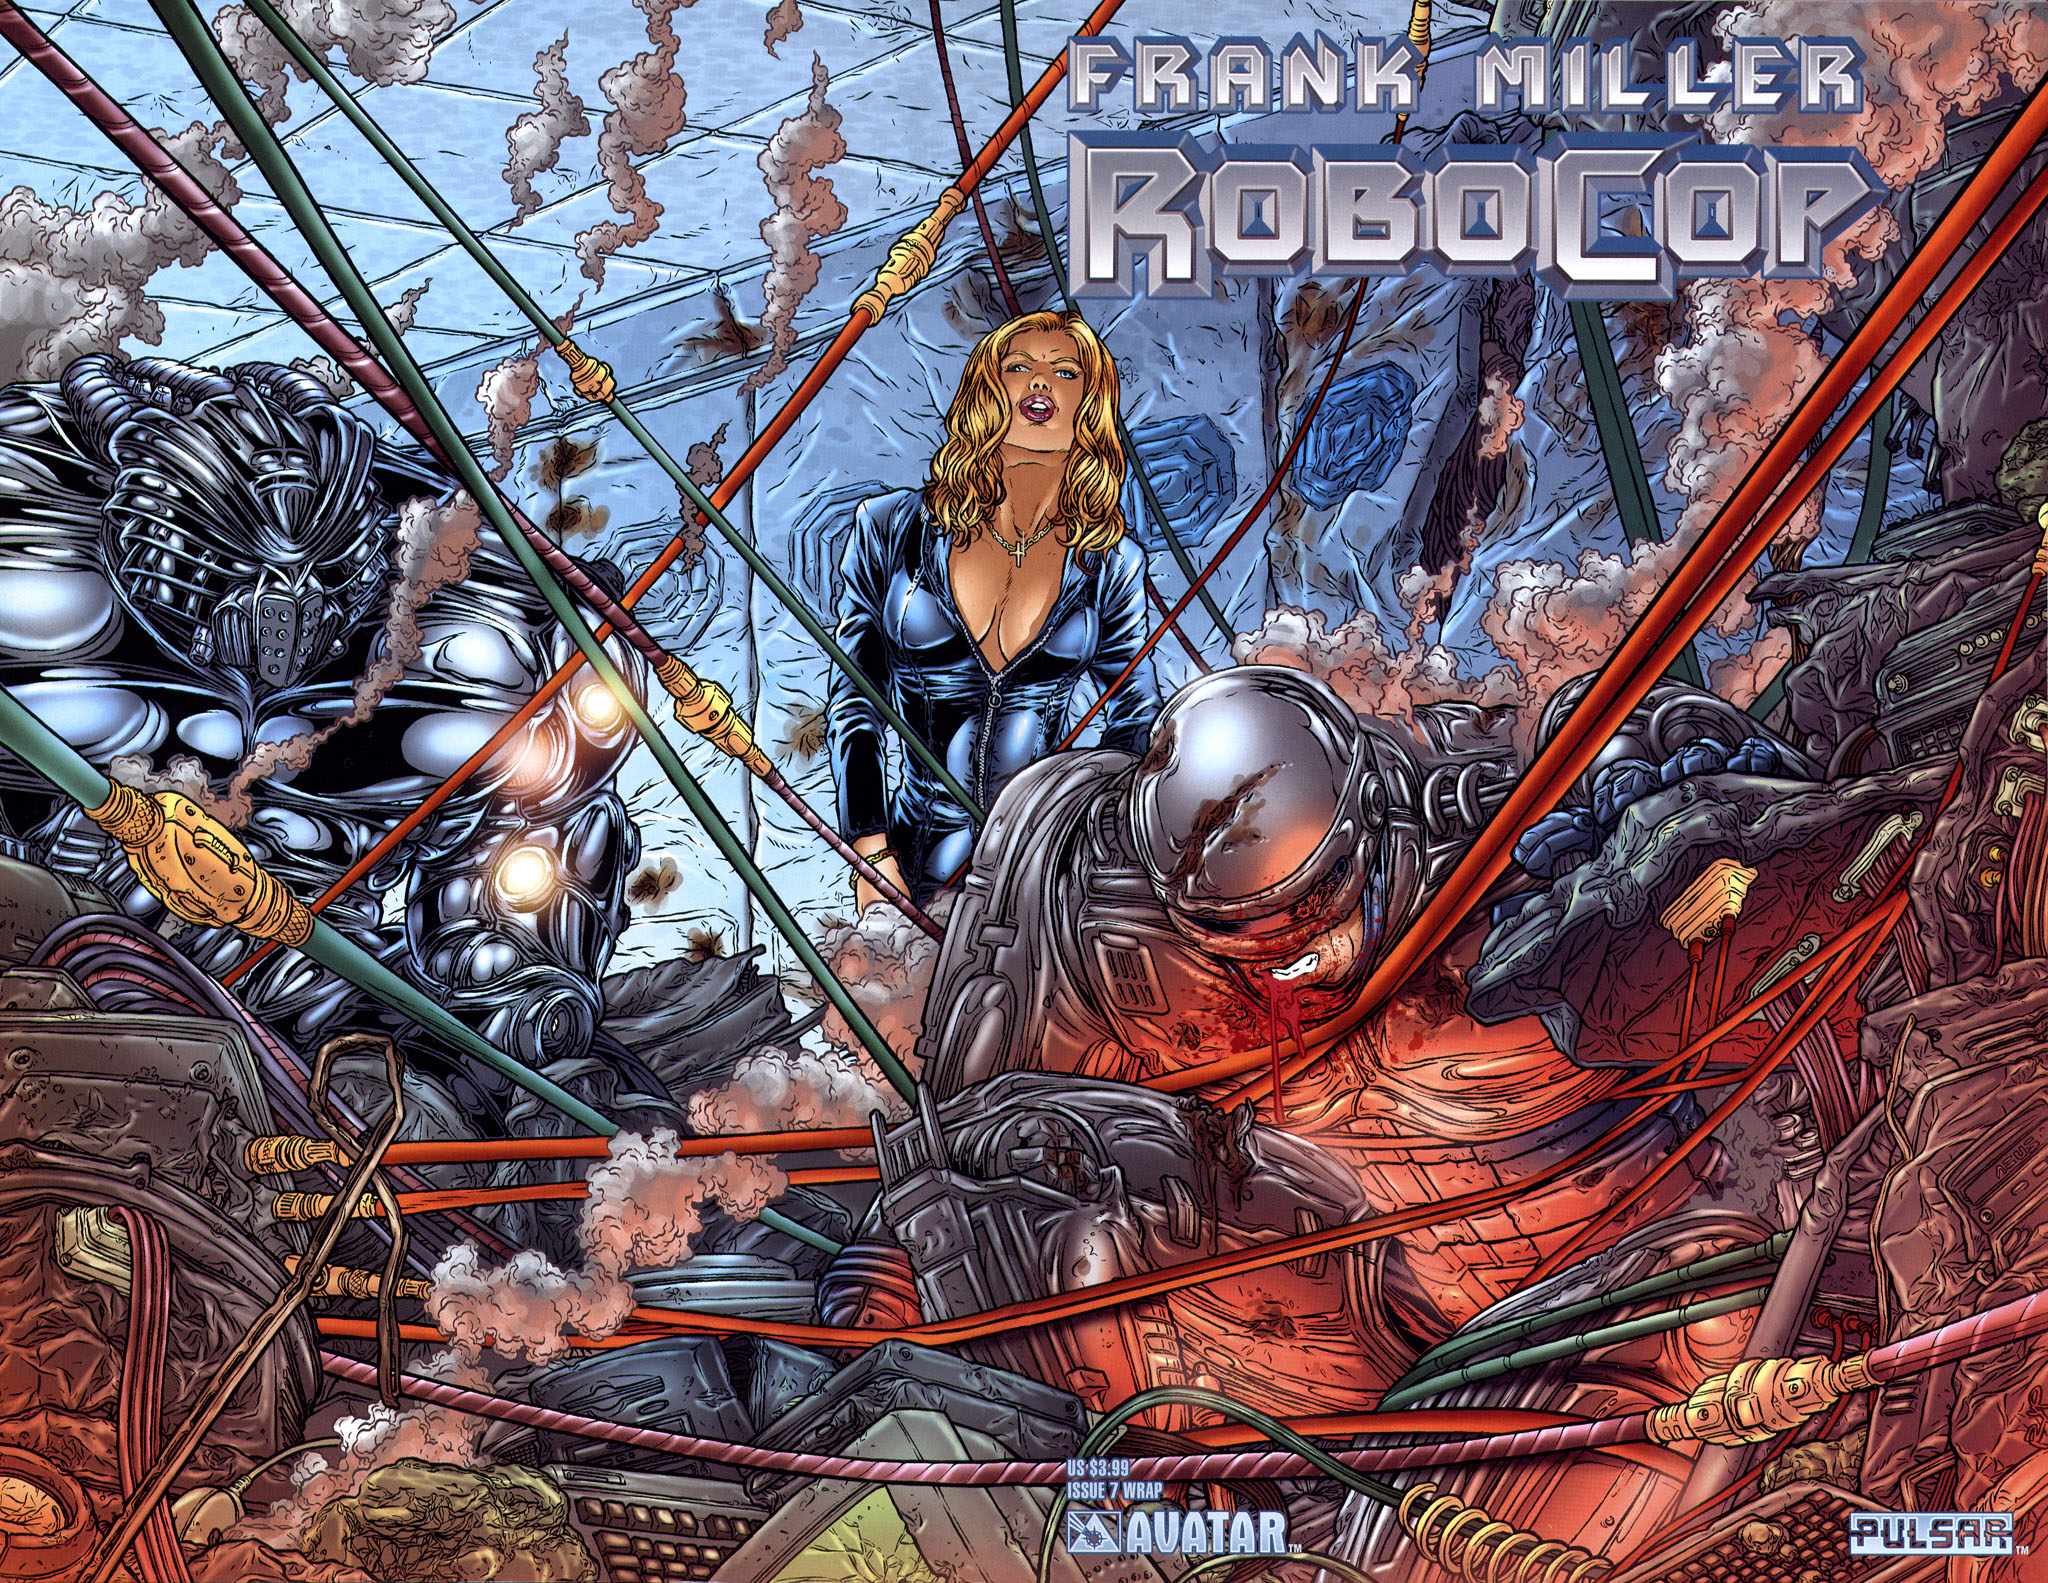 Read online Frank Miller's Robocop comic -  Issue #7 - 1